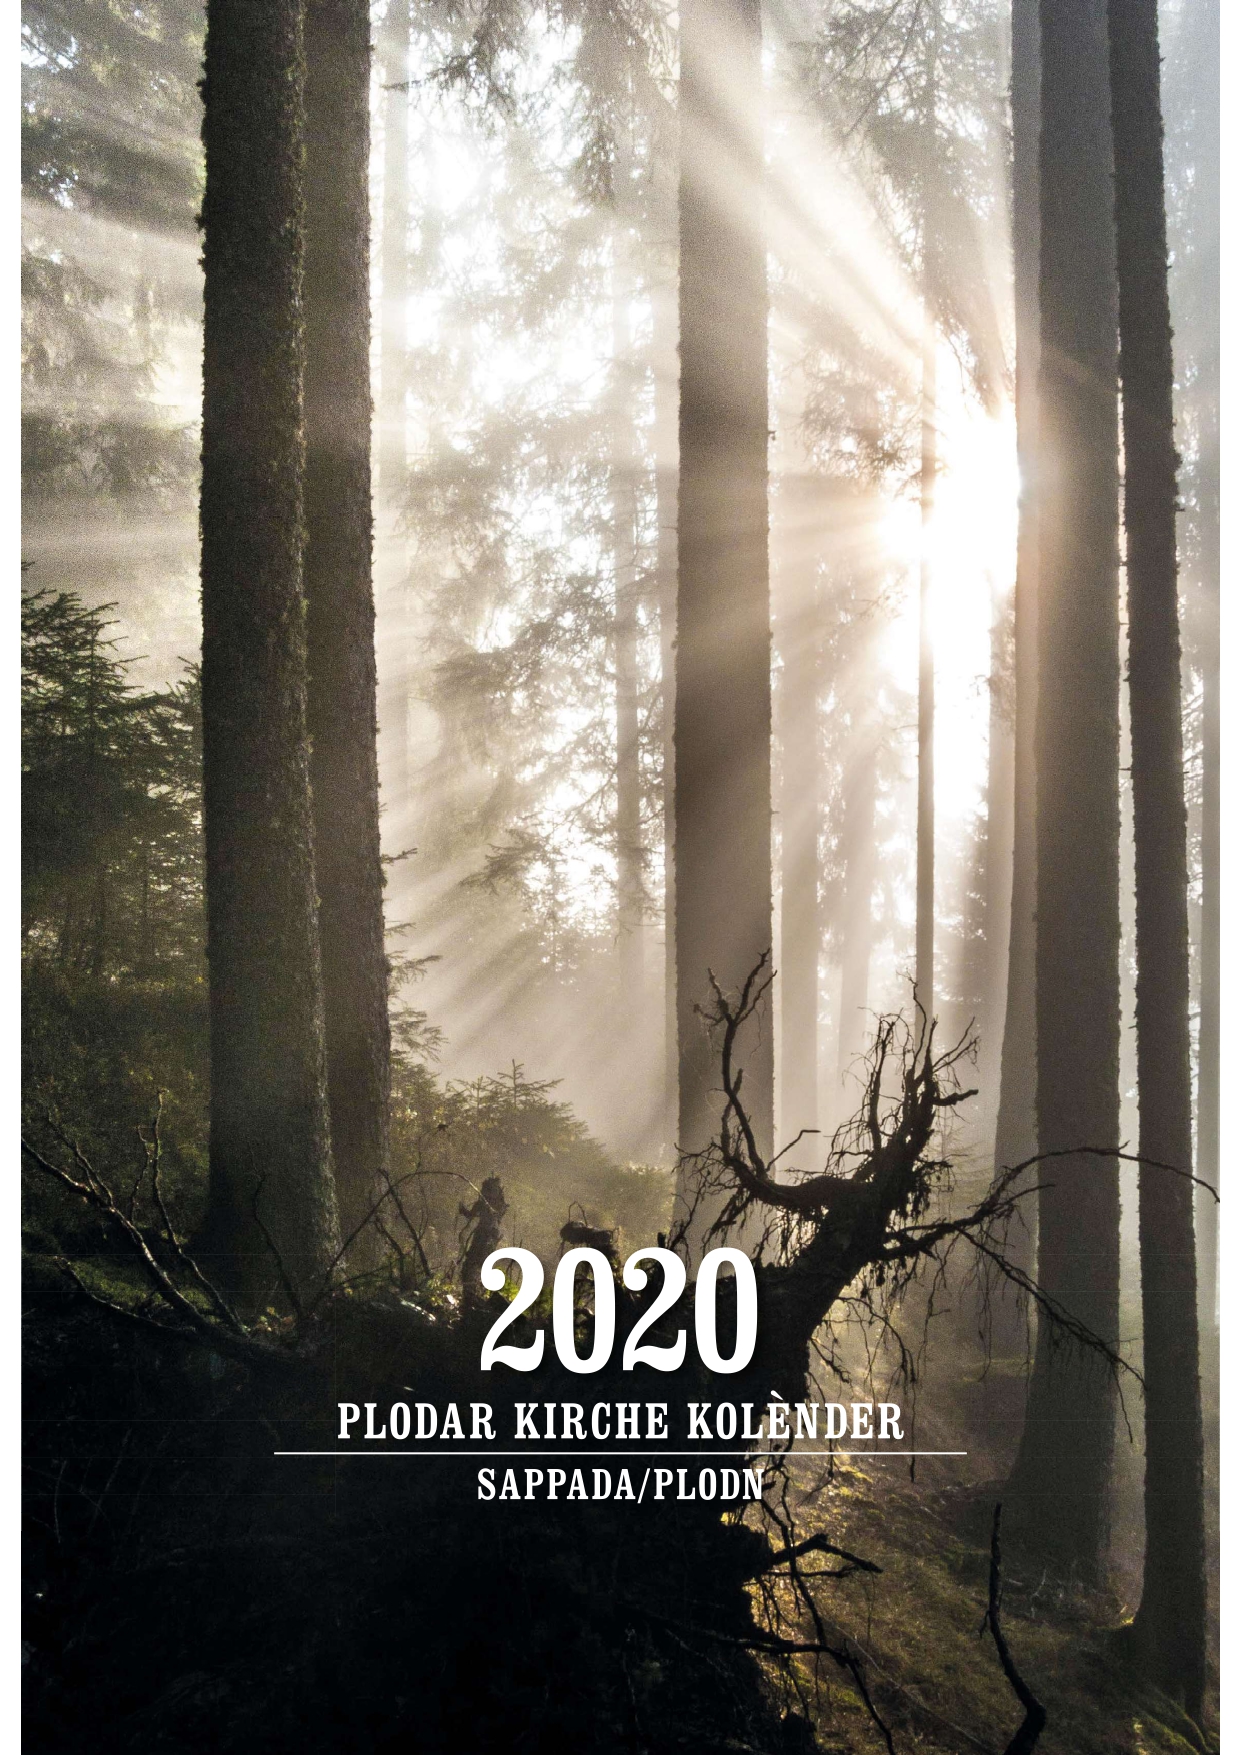 Plodar-kirche-kolender-2020